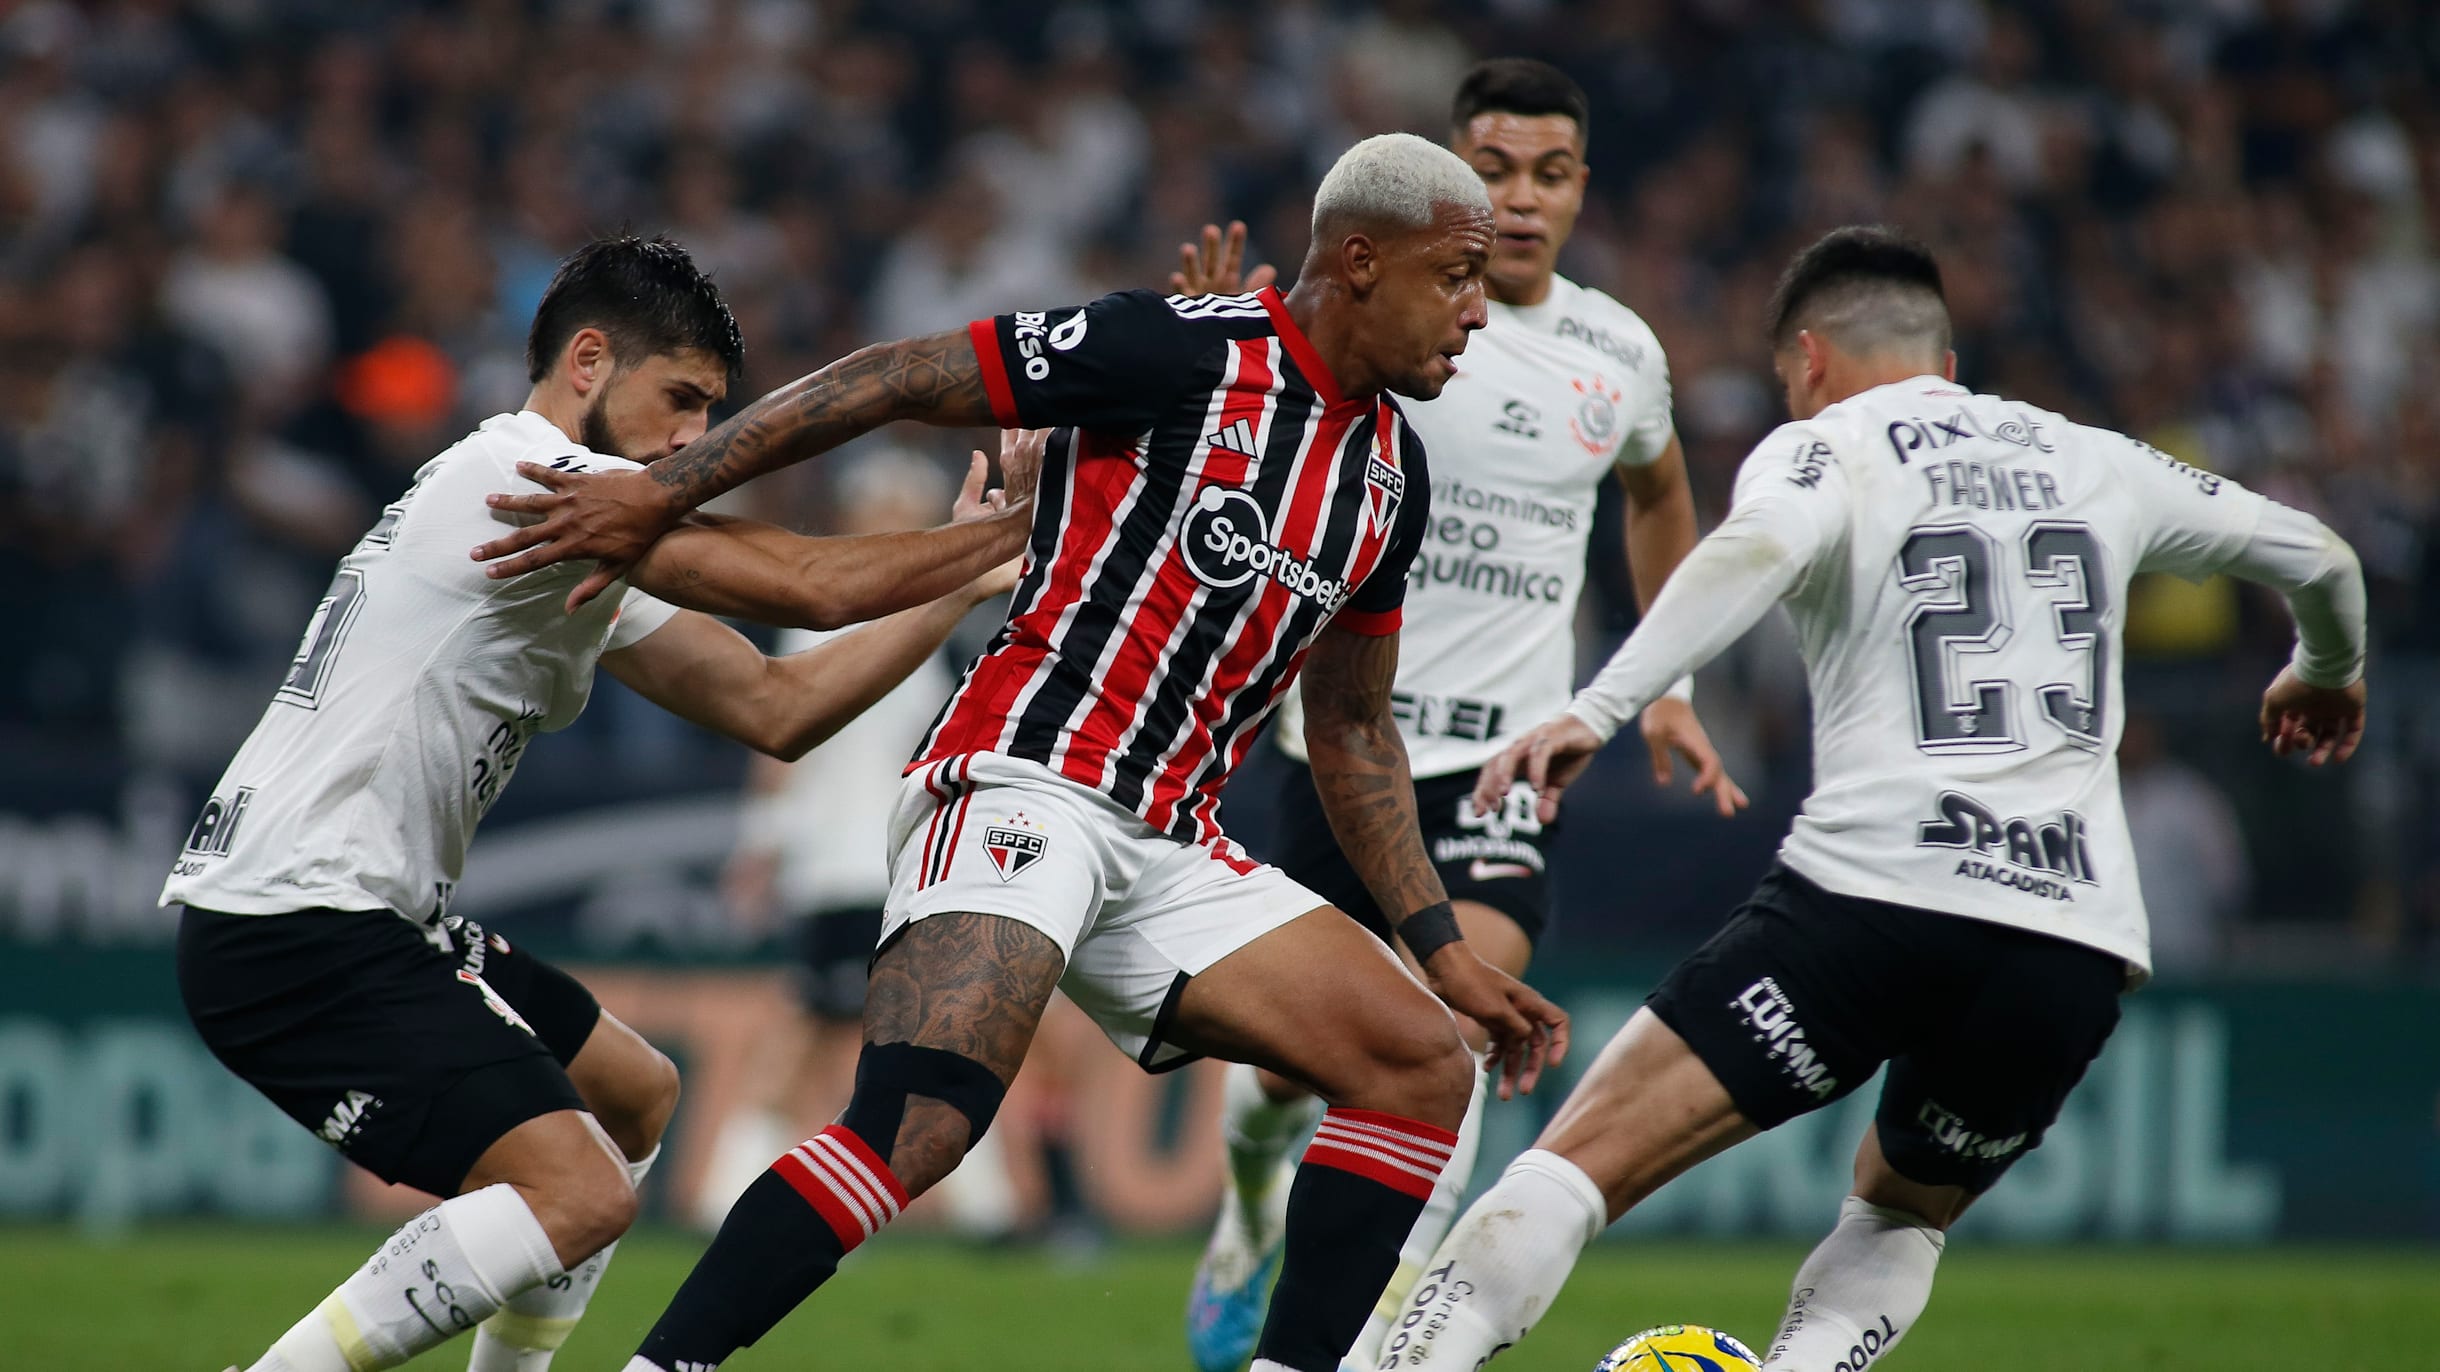 Próximos jogos do Corinthians: onde assistir ao vivo na TV